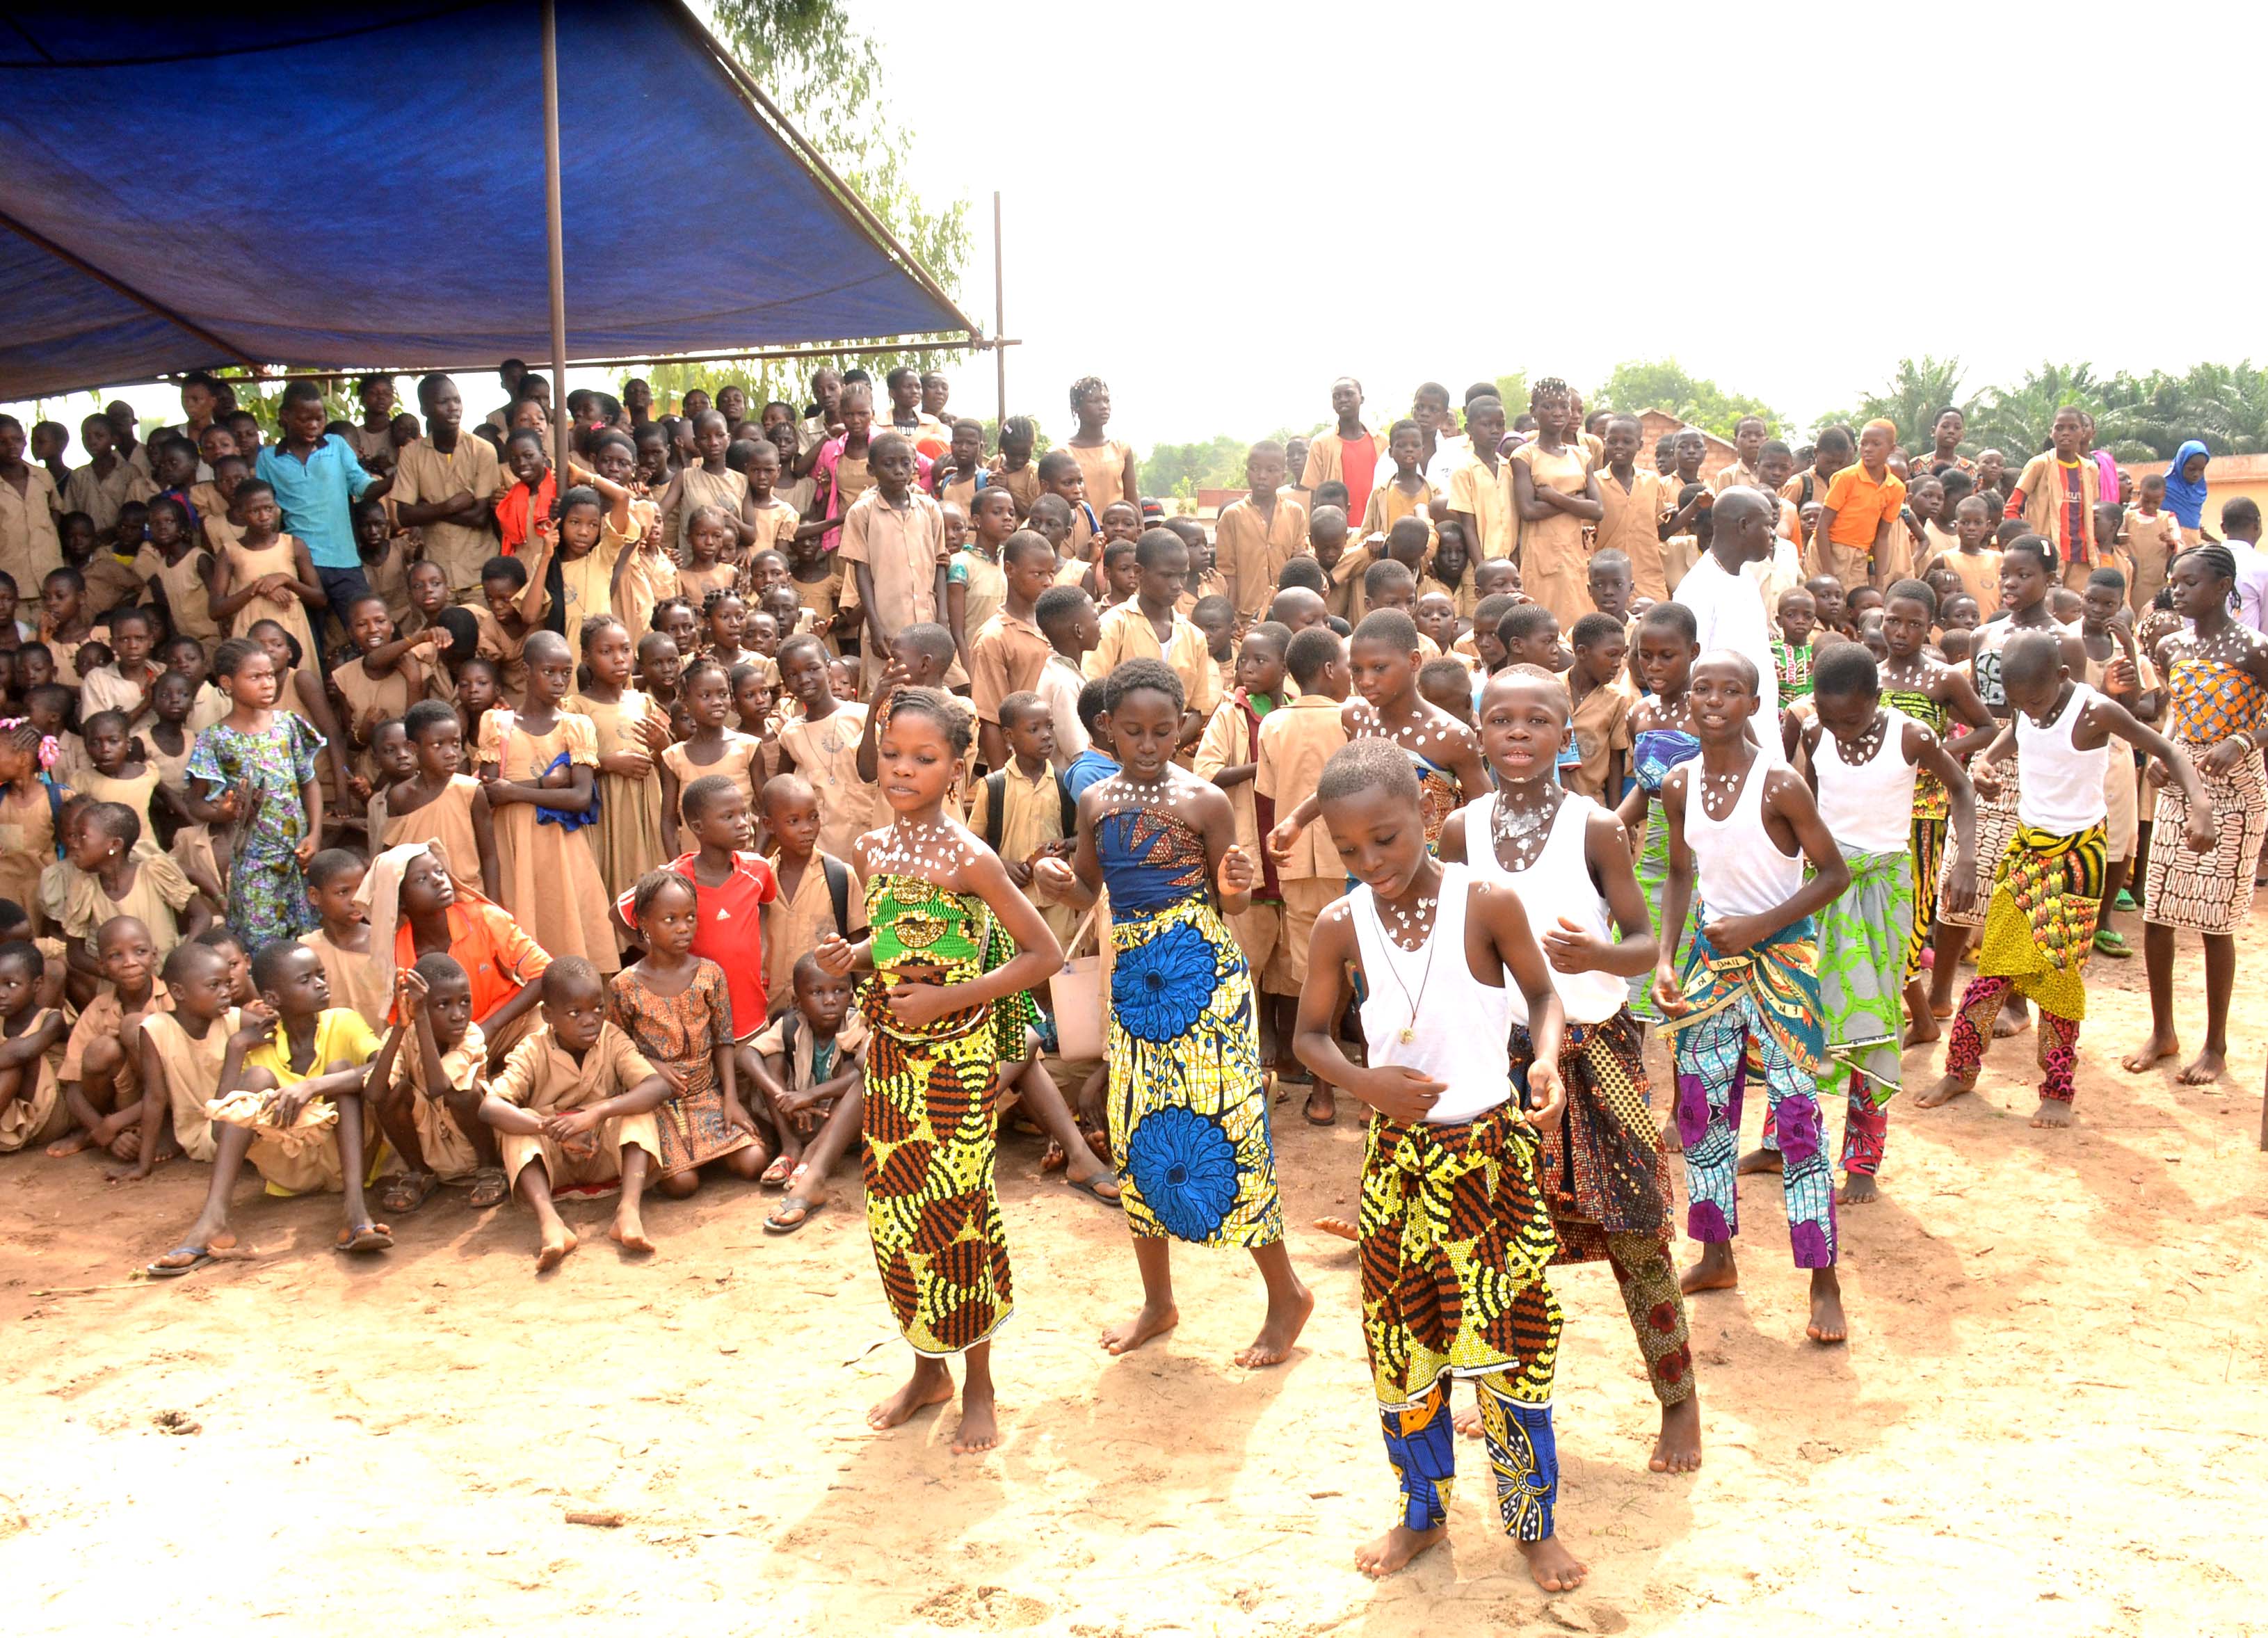 Tanzende Kinder bei der Eröffnung der Schule